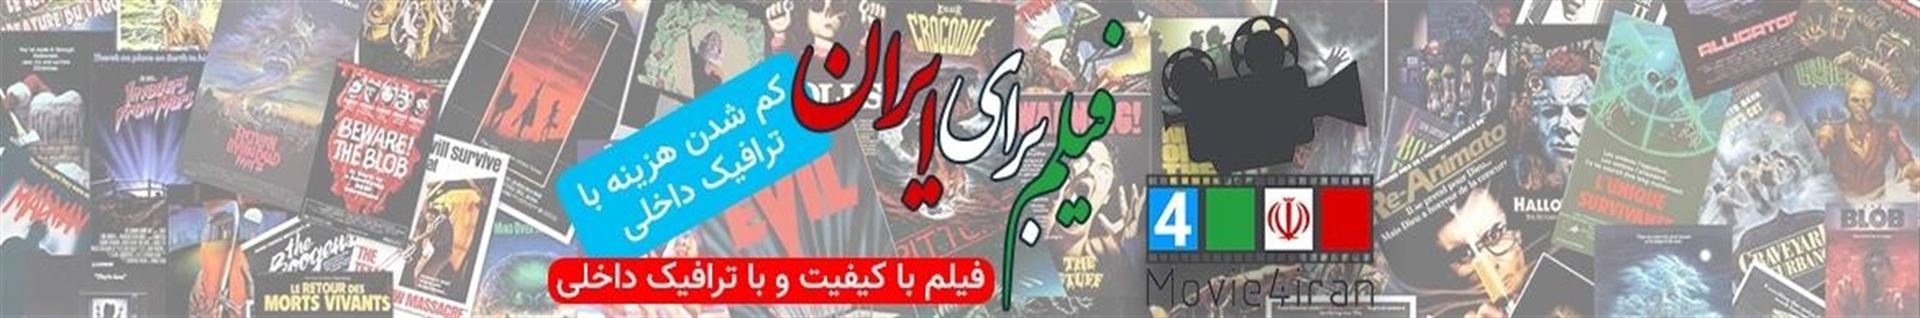 فیلم برای ایران Movie4iran